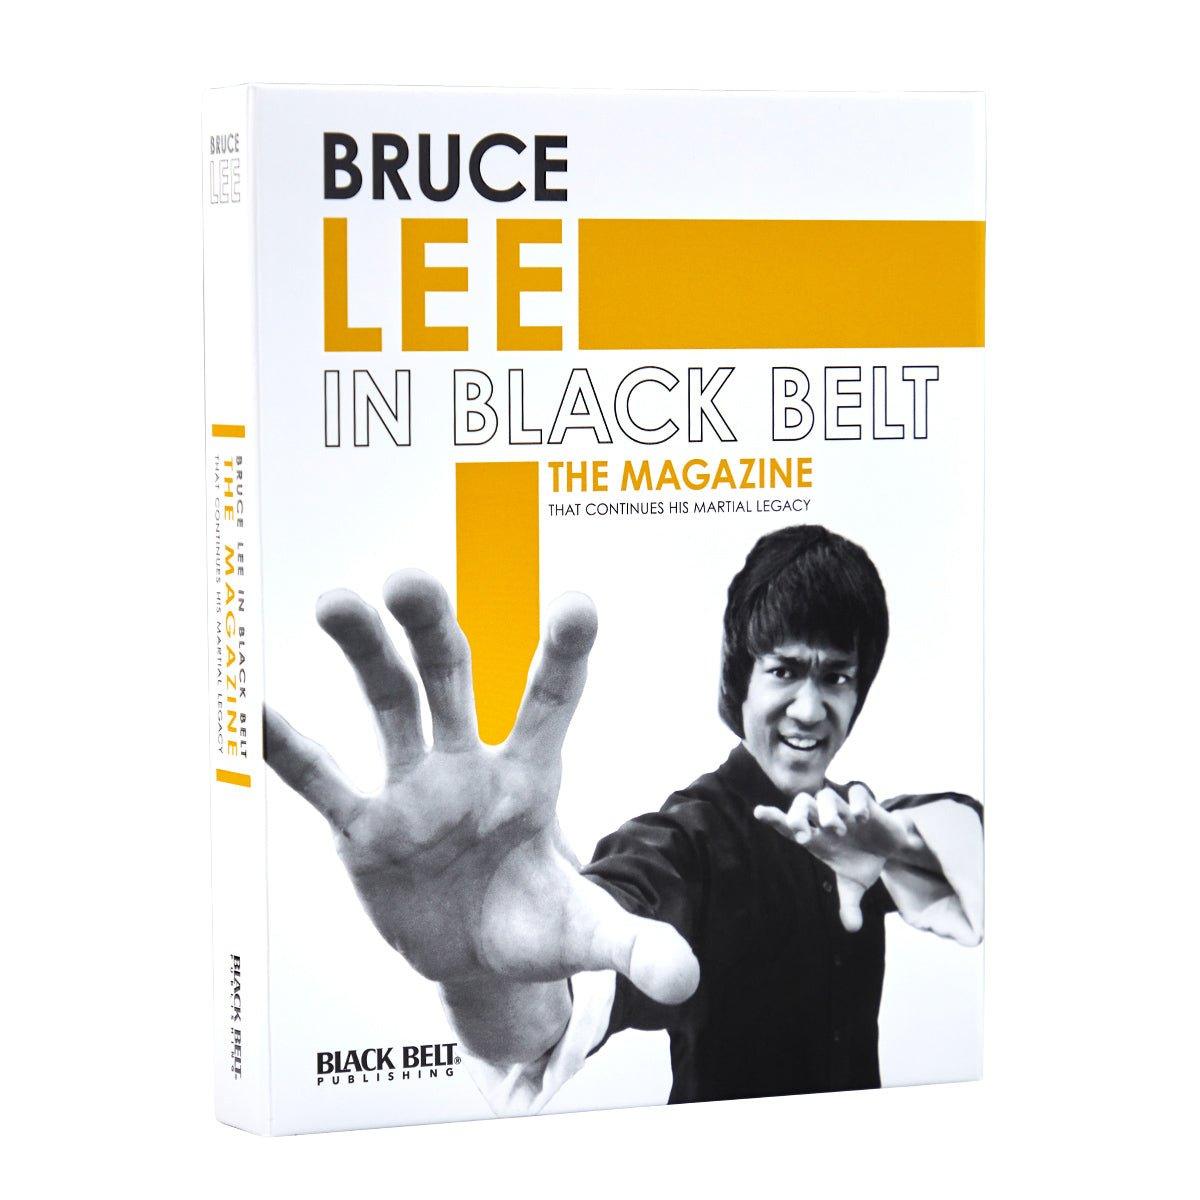 Bruce Lee in Black Belt Magazine - Violent Art Shop